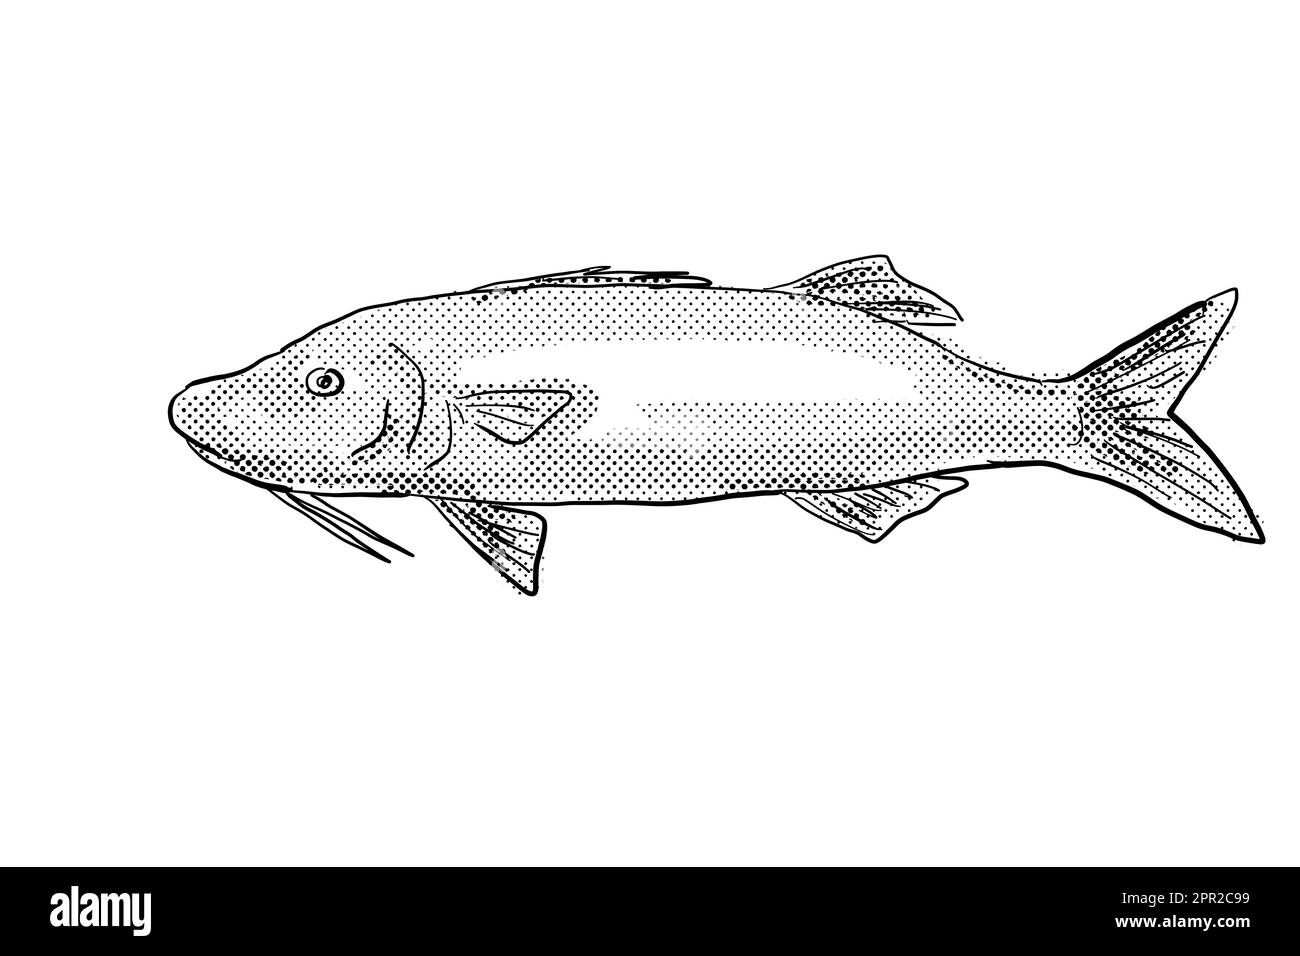 Dessin de style caricaturier d'un Moana kali Paruceneus cyclostomus ou d'un goiatfis à selle d'or un poisson endémique à Hawaï et à l'archipel hawaïen avec demi-to Banque D'Images